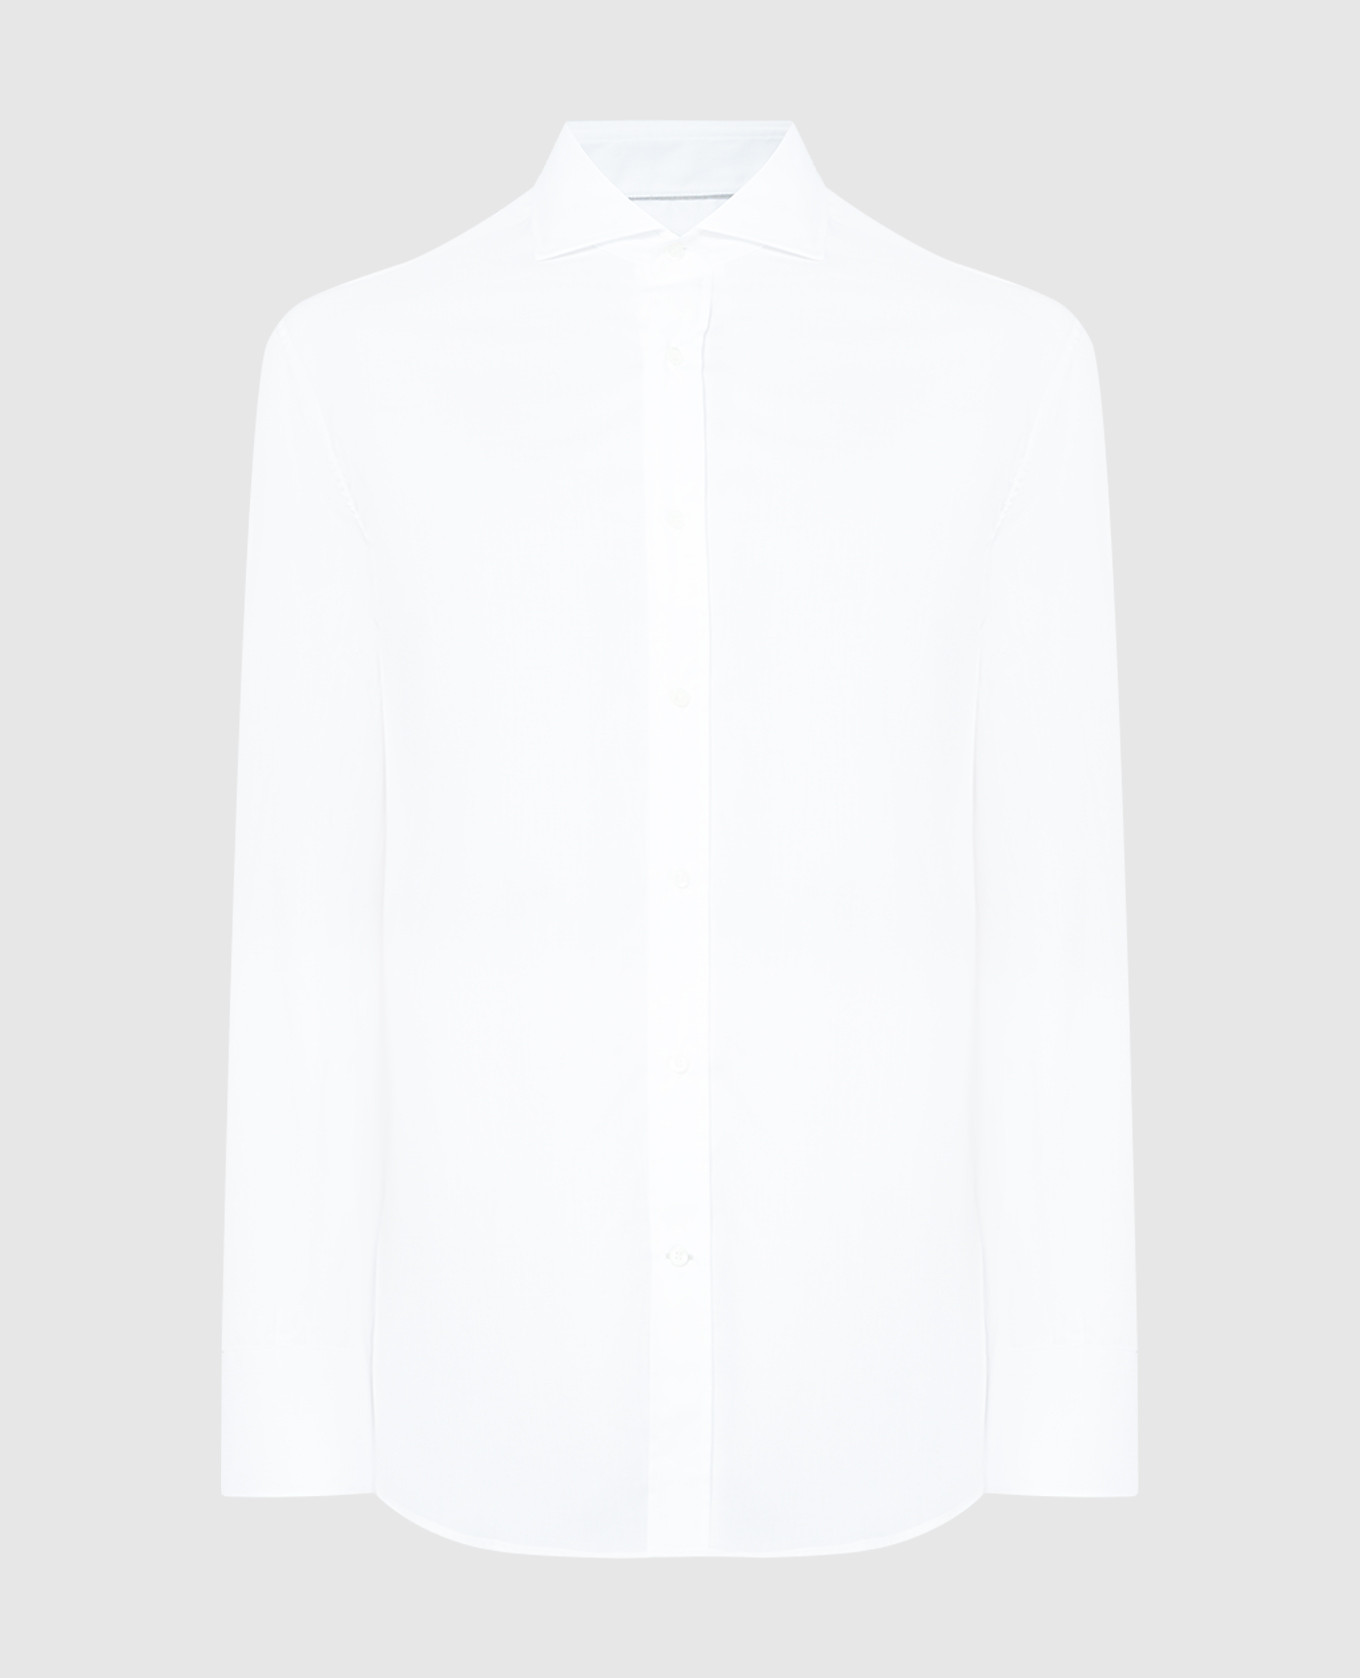 Белая классическая рубашка